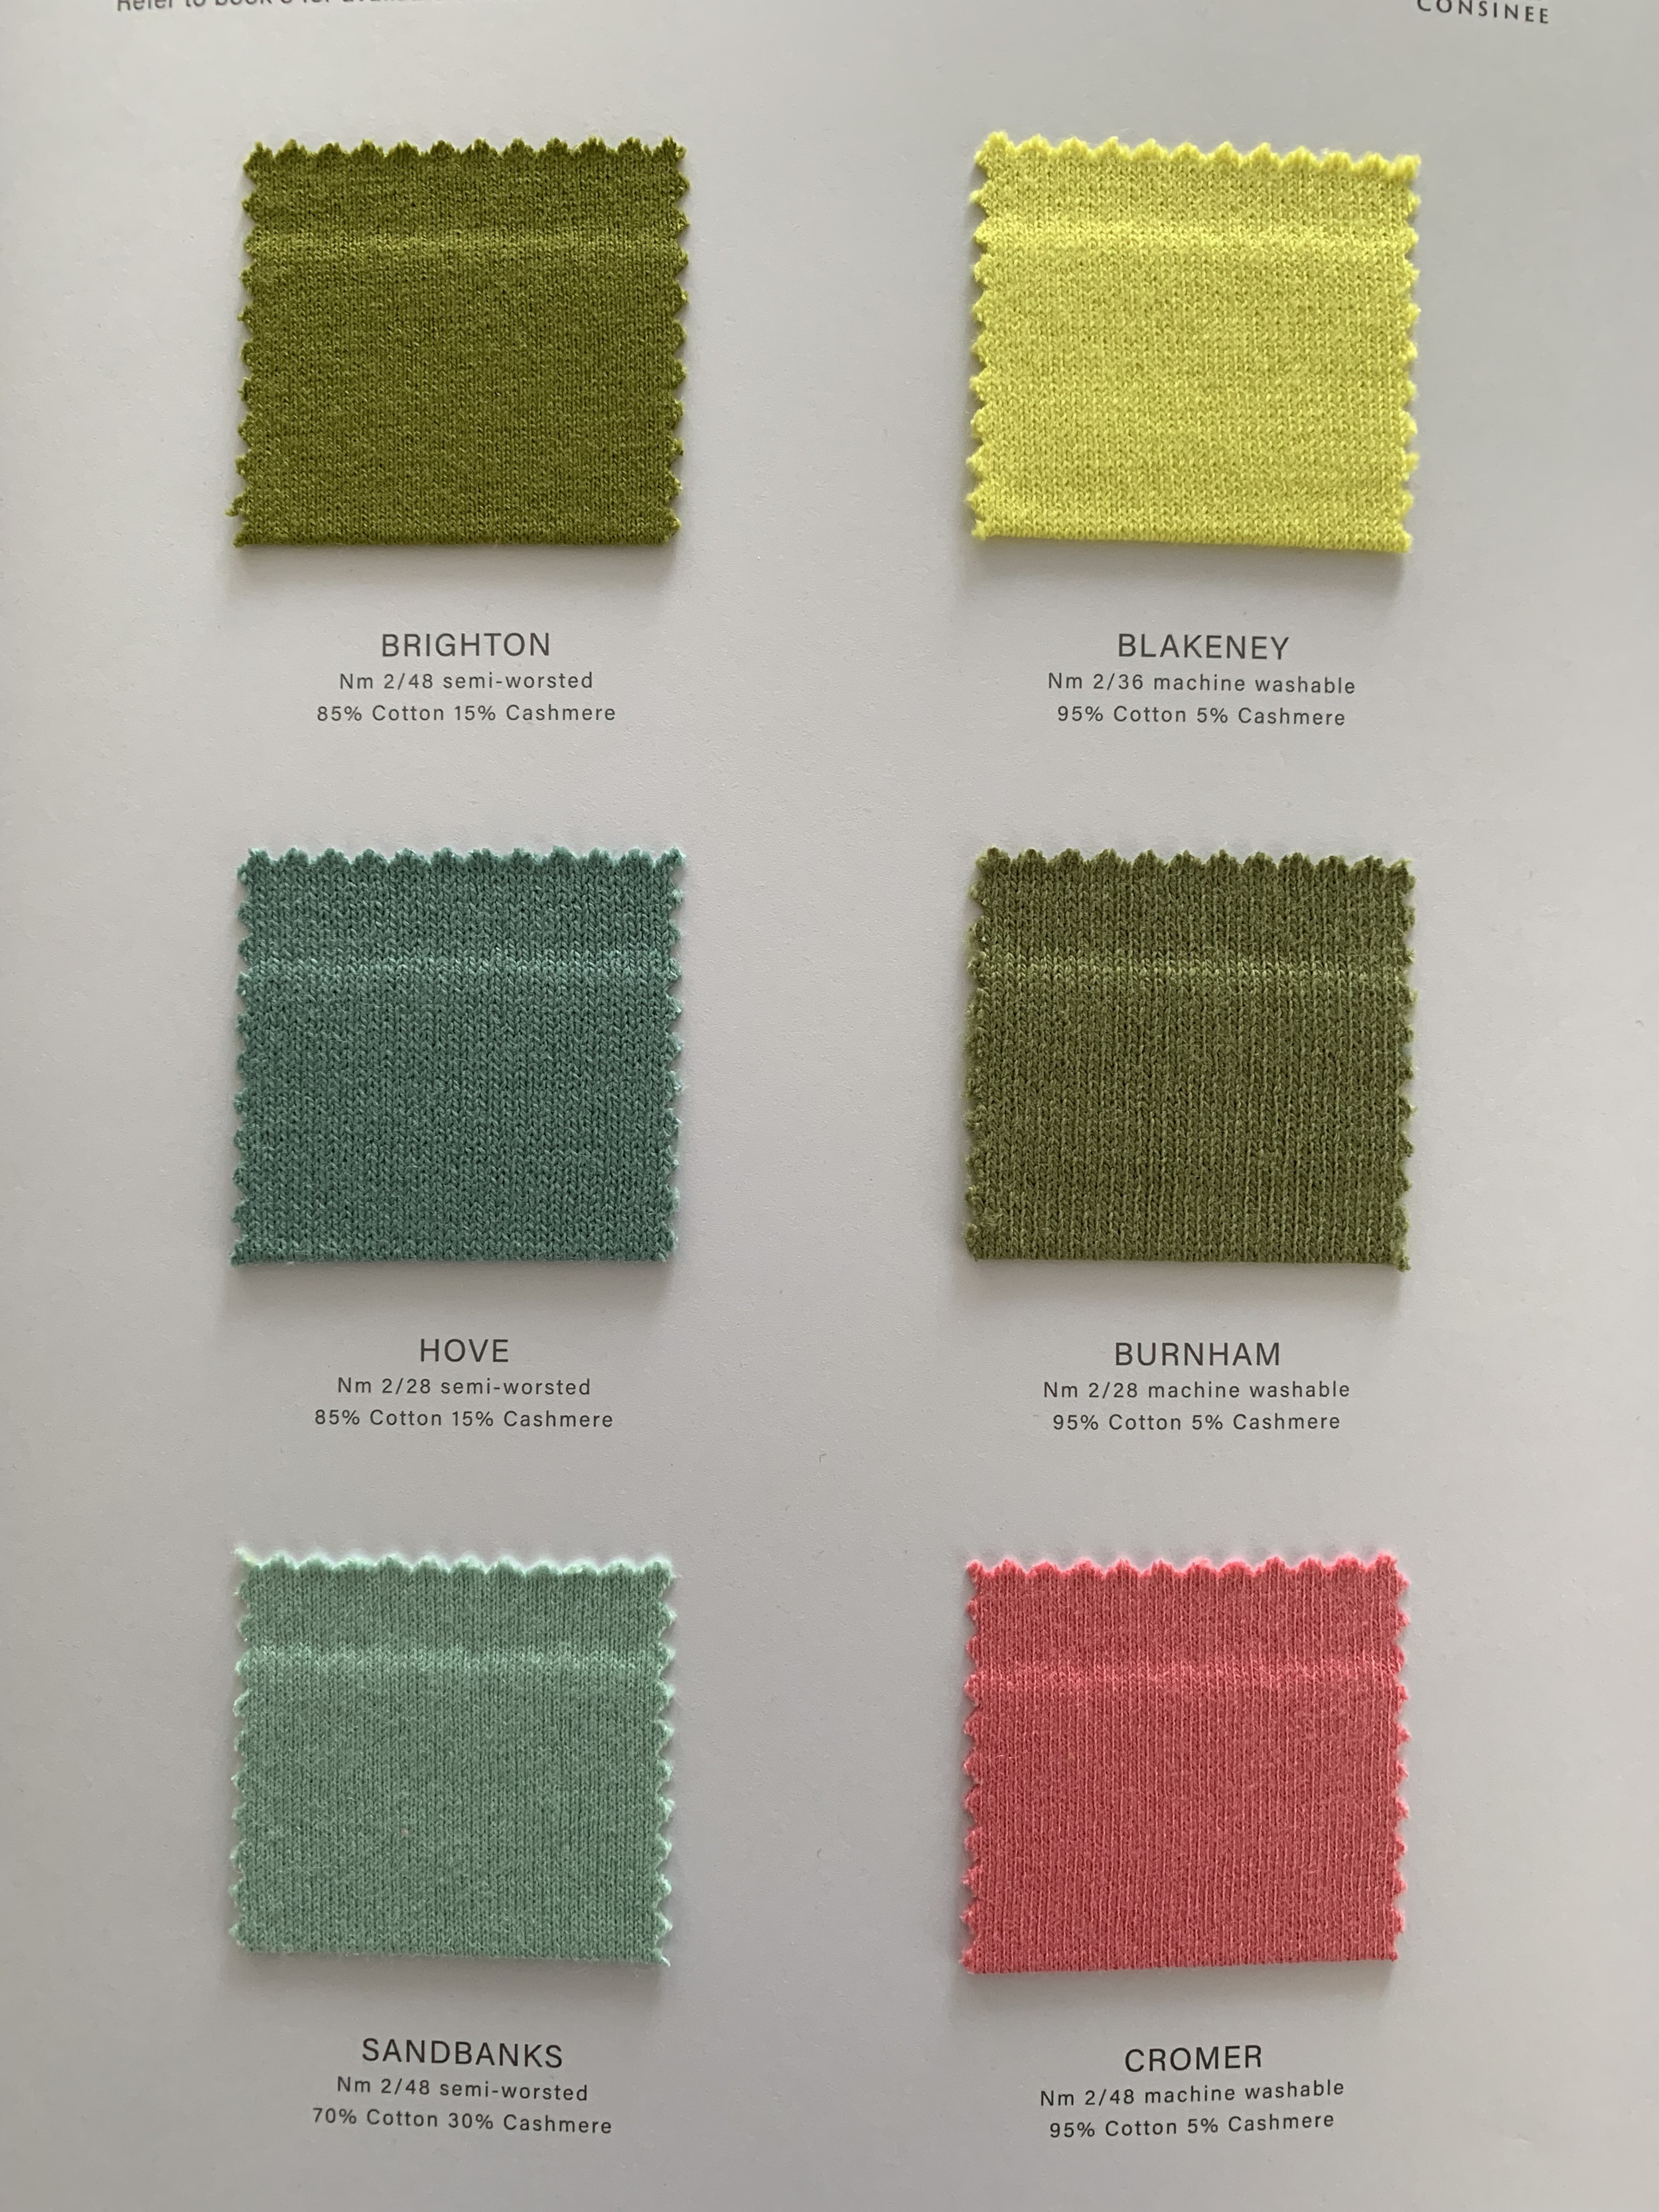 Cartes de couleurs de mélange de cachemire printanier Ewsca avec tous les matériaux